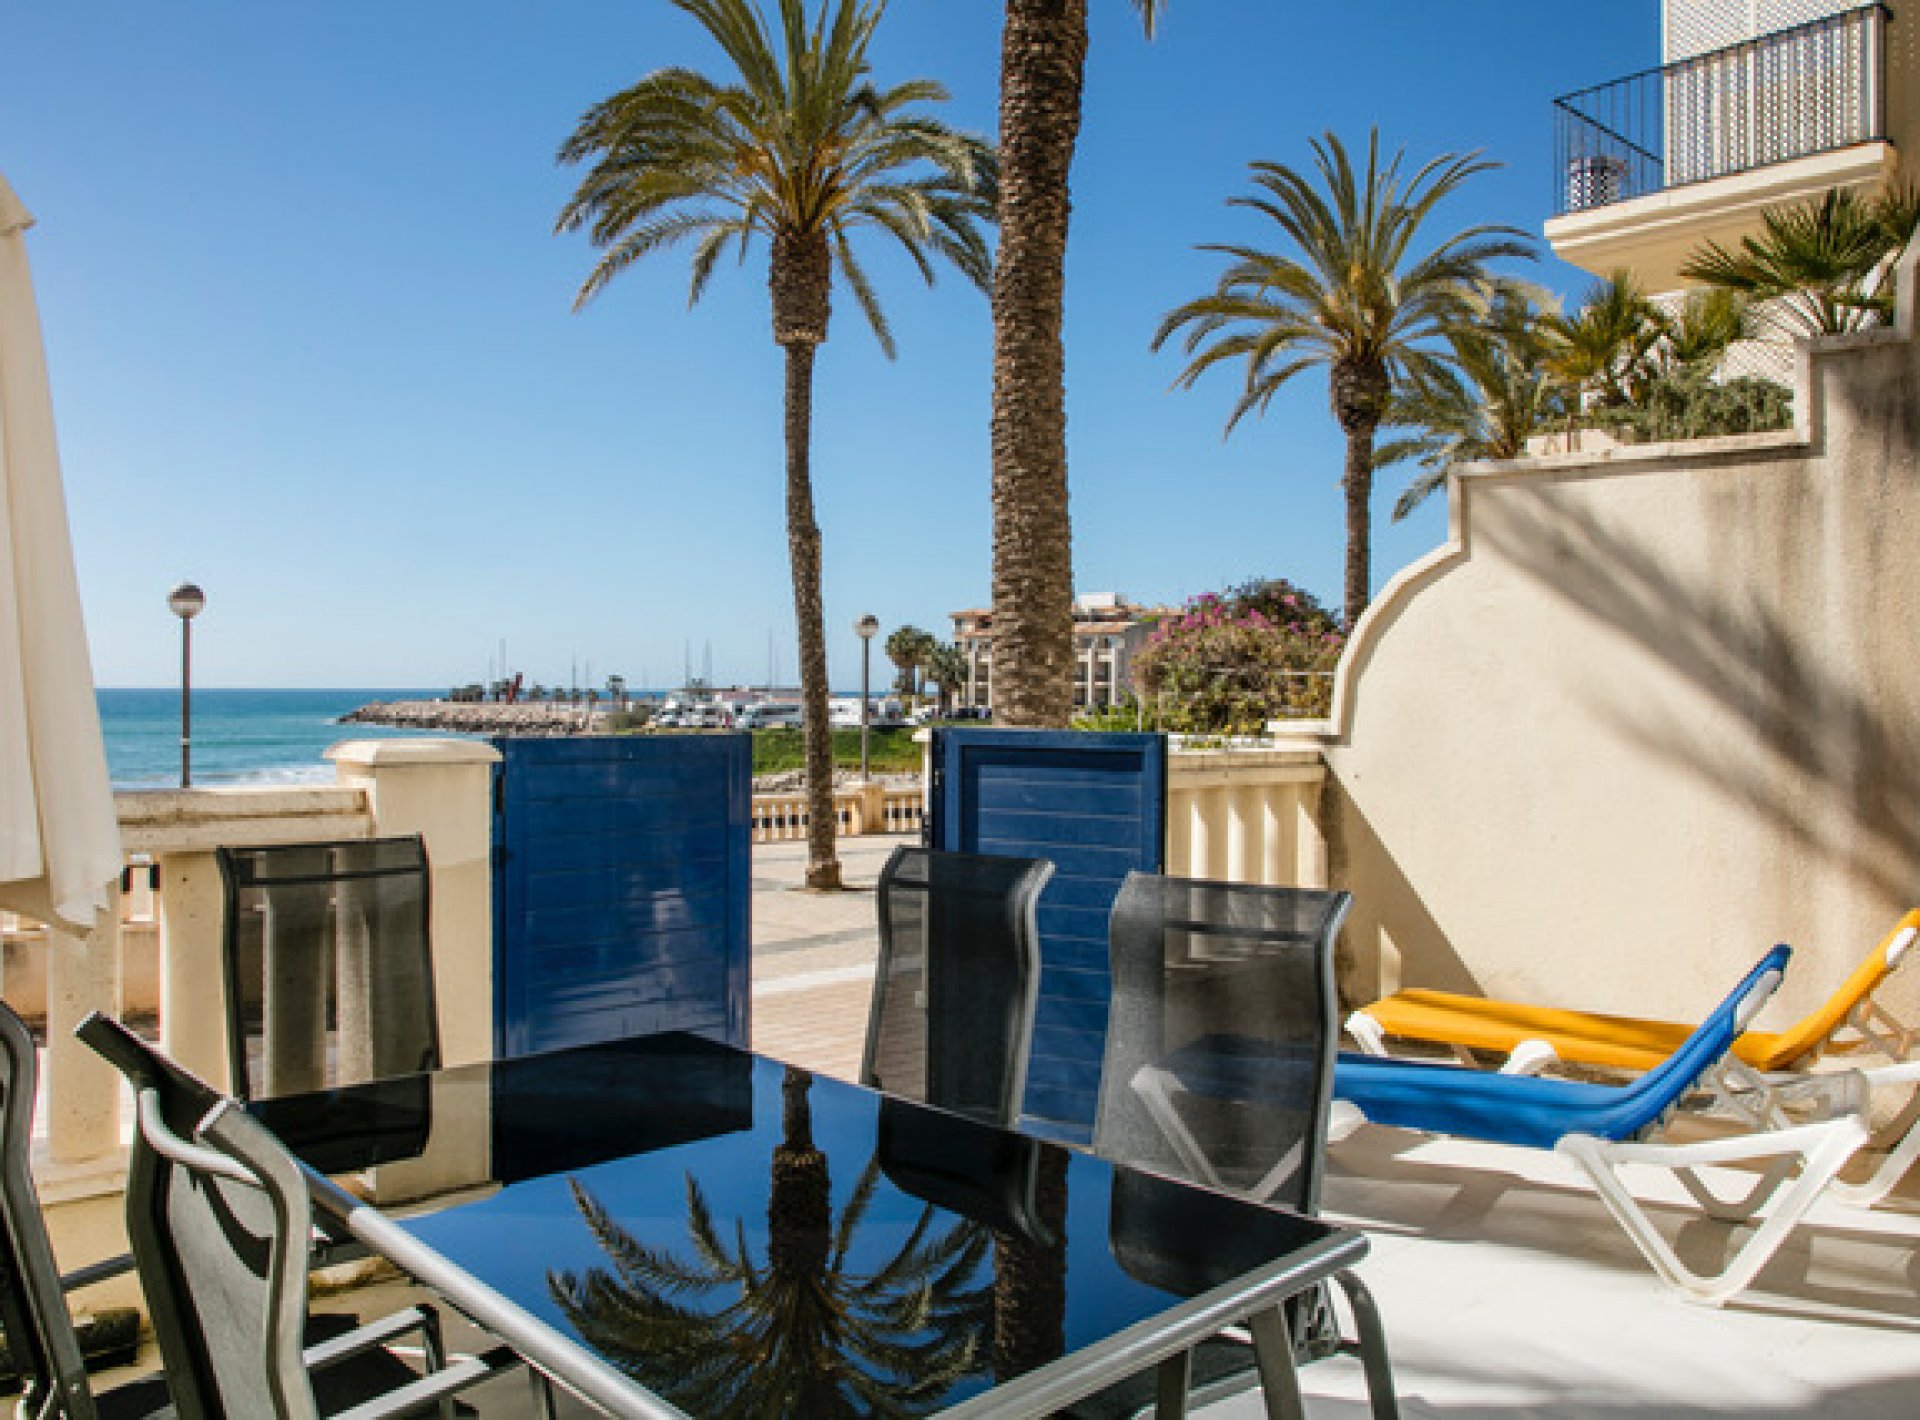 Apartamento Marina Sun con hermosa terraza a primera línea de playa con vistas al mar, piscina y pista de tenis -Pet Friendly by GLOBALSITGES